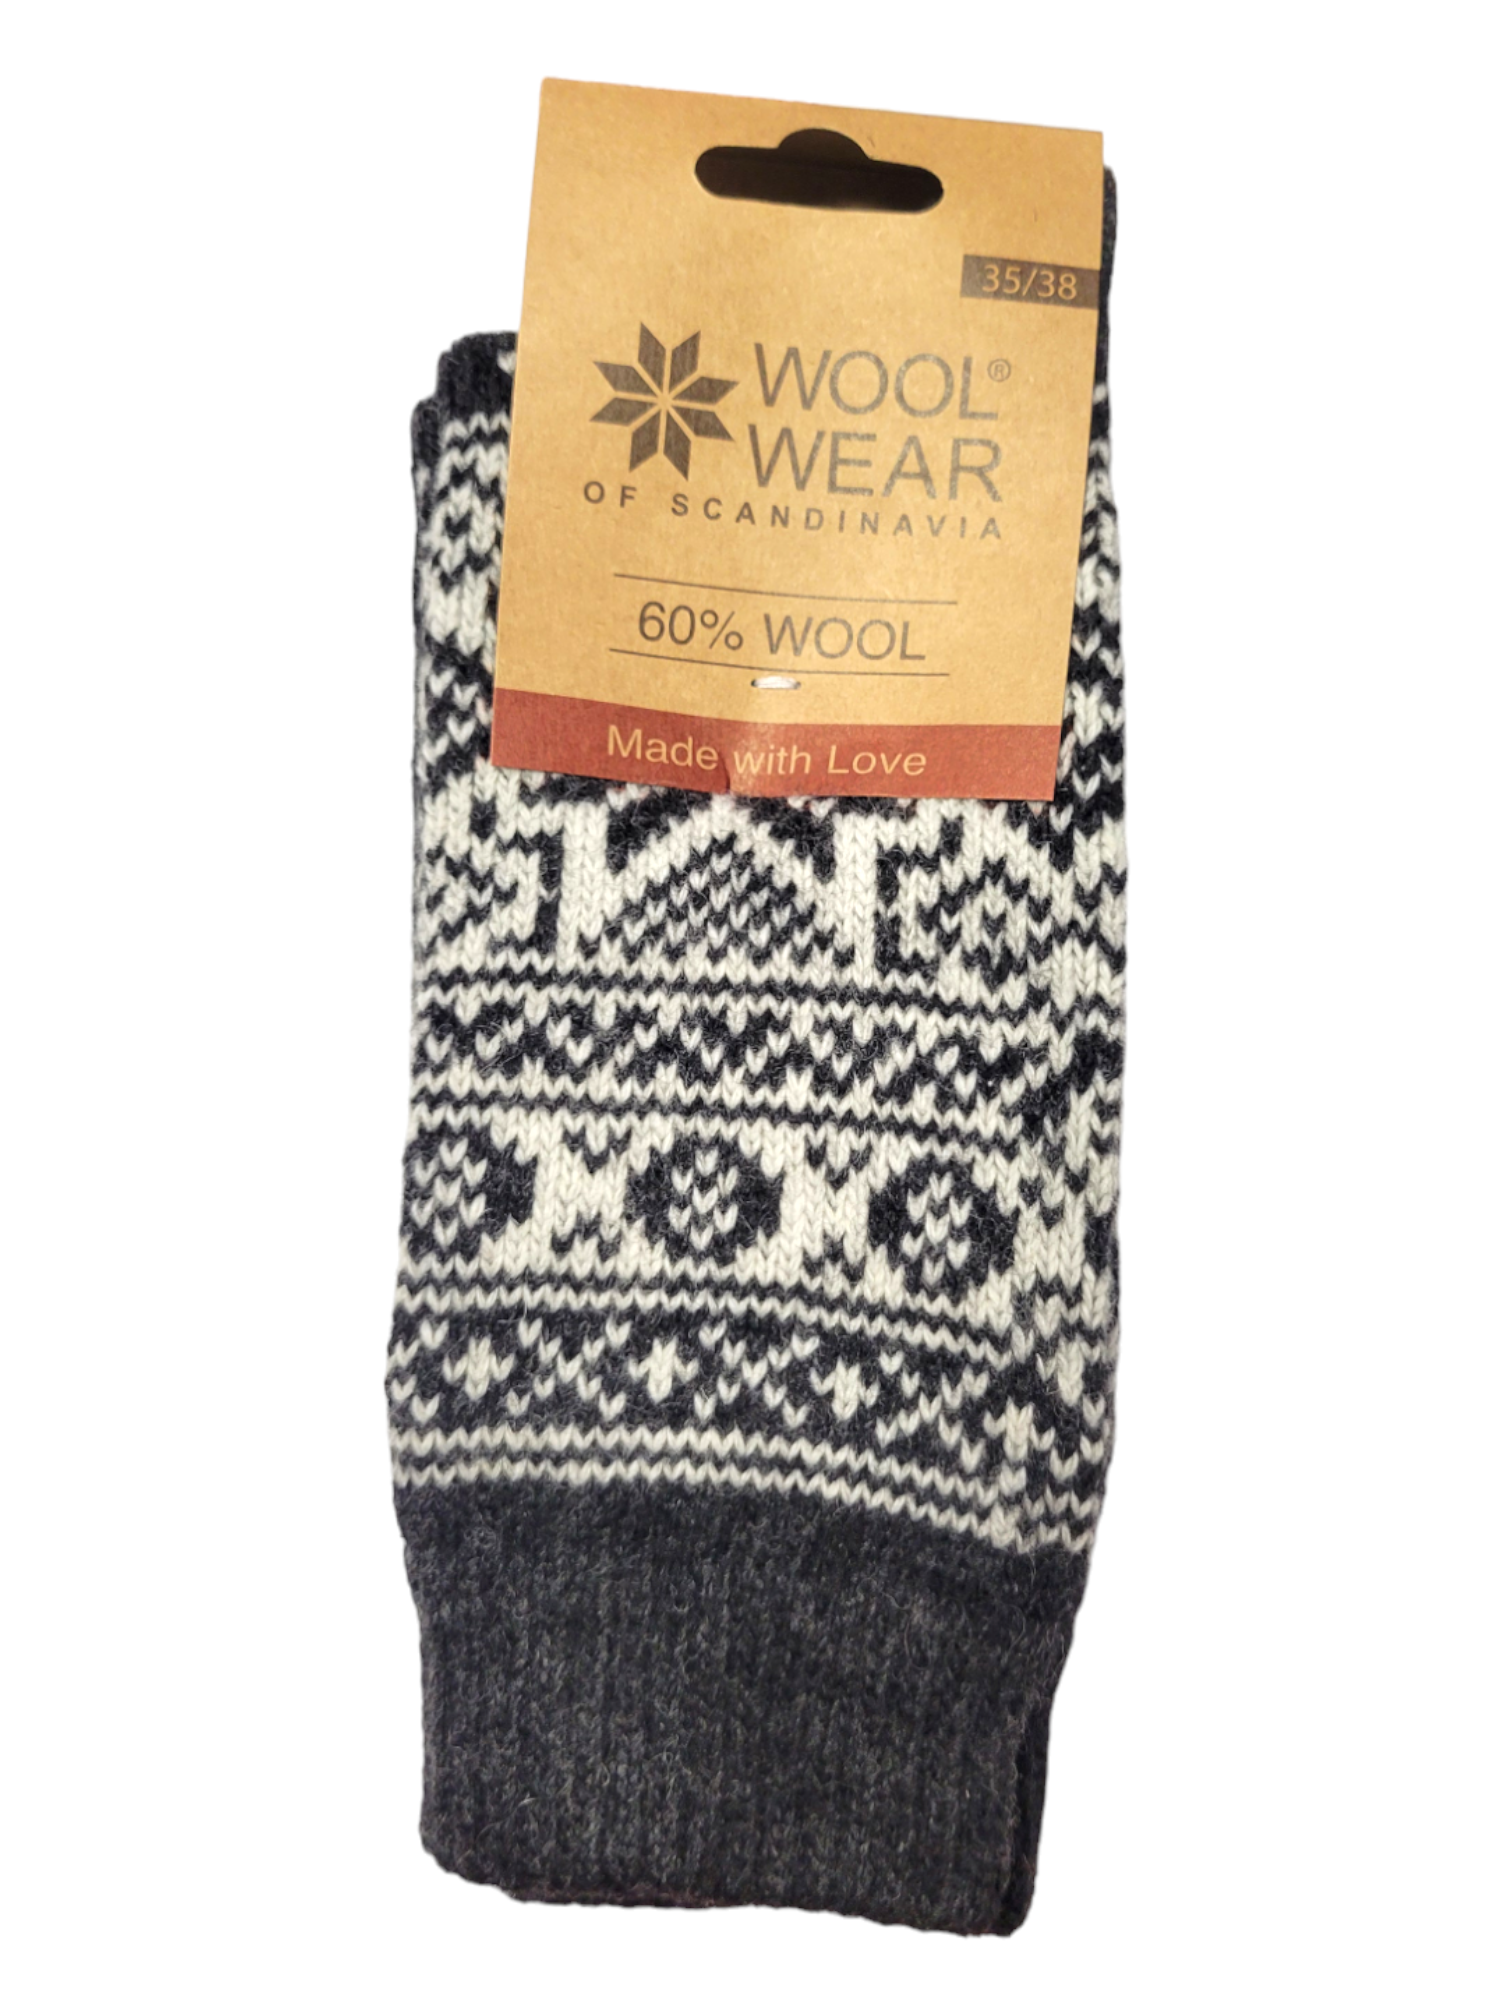 Socks: Wool Wear - Charcoal w/ White Pattern, Selbu Star, 60% Wool